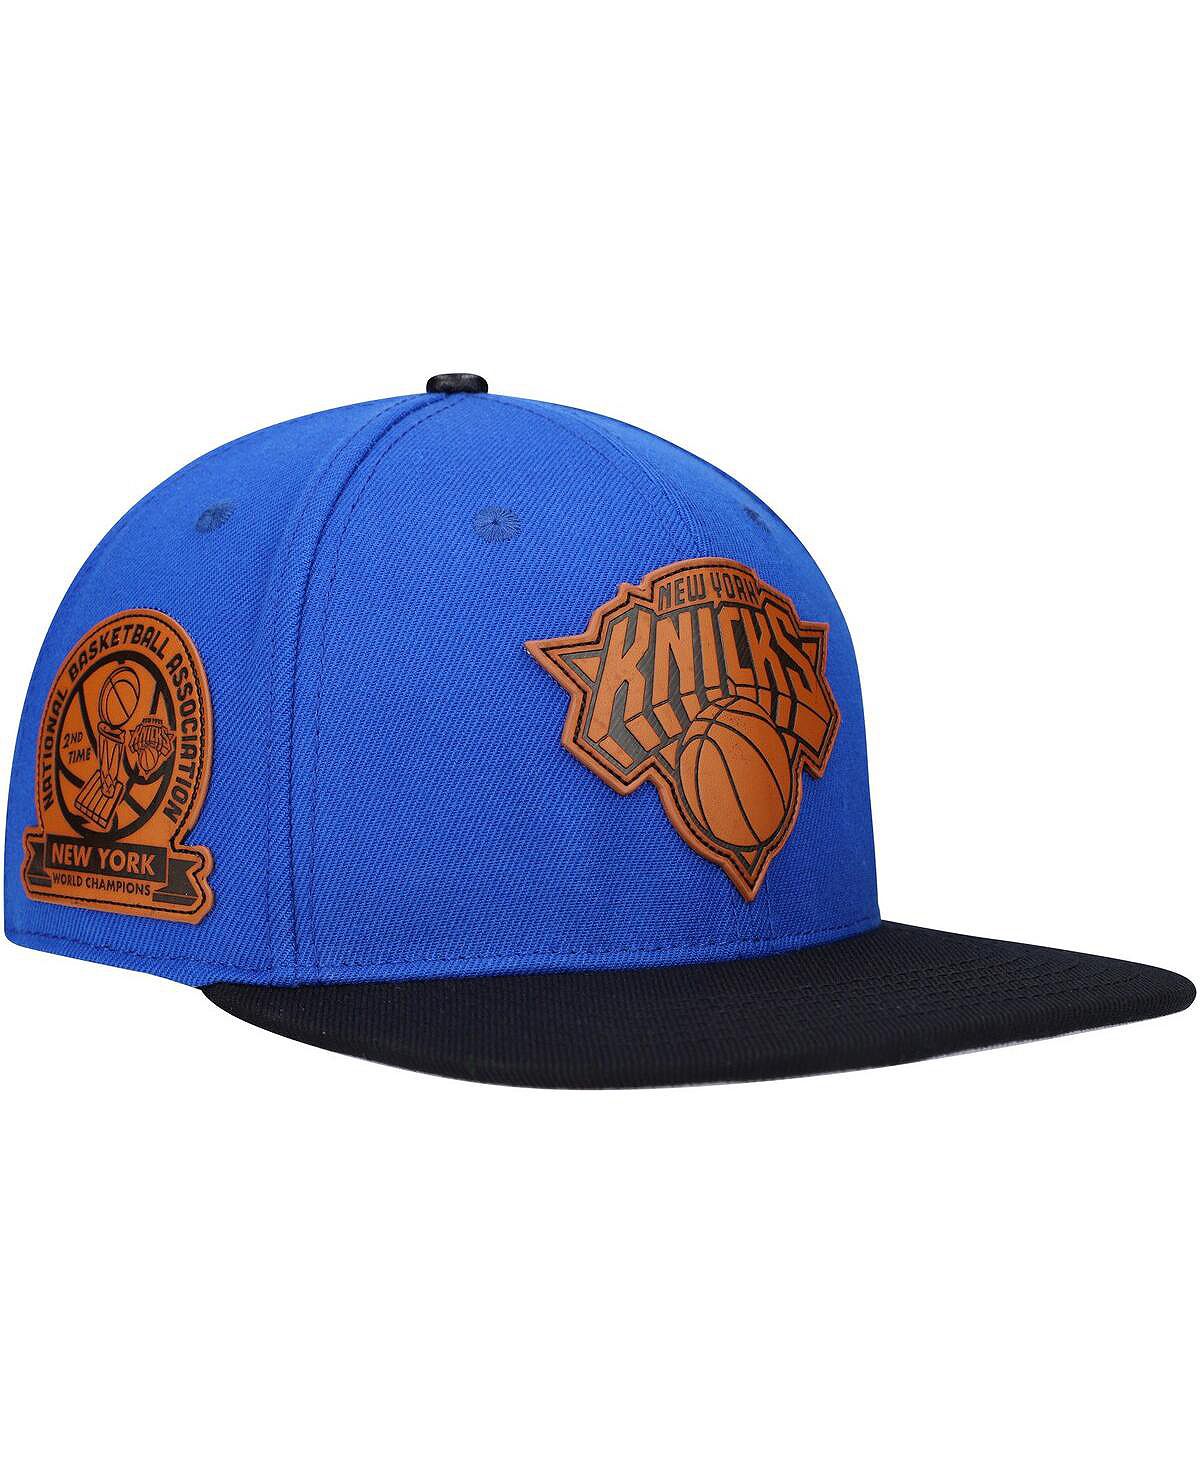 Мужская сине-черная кепка Snapback с кожаной нашивкой New York Knicks Heritage Pro Standard